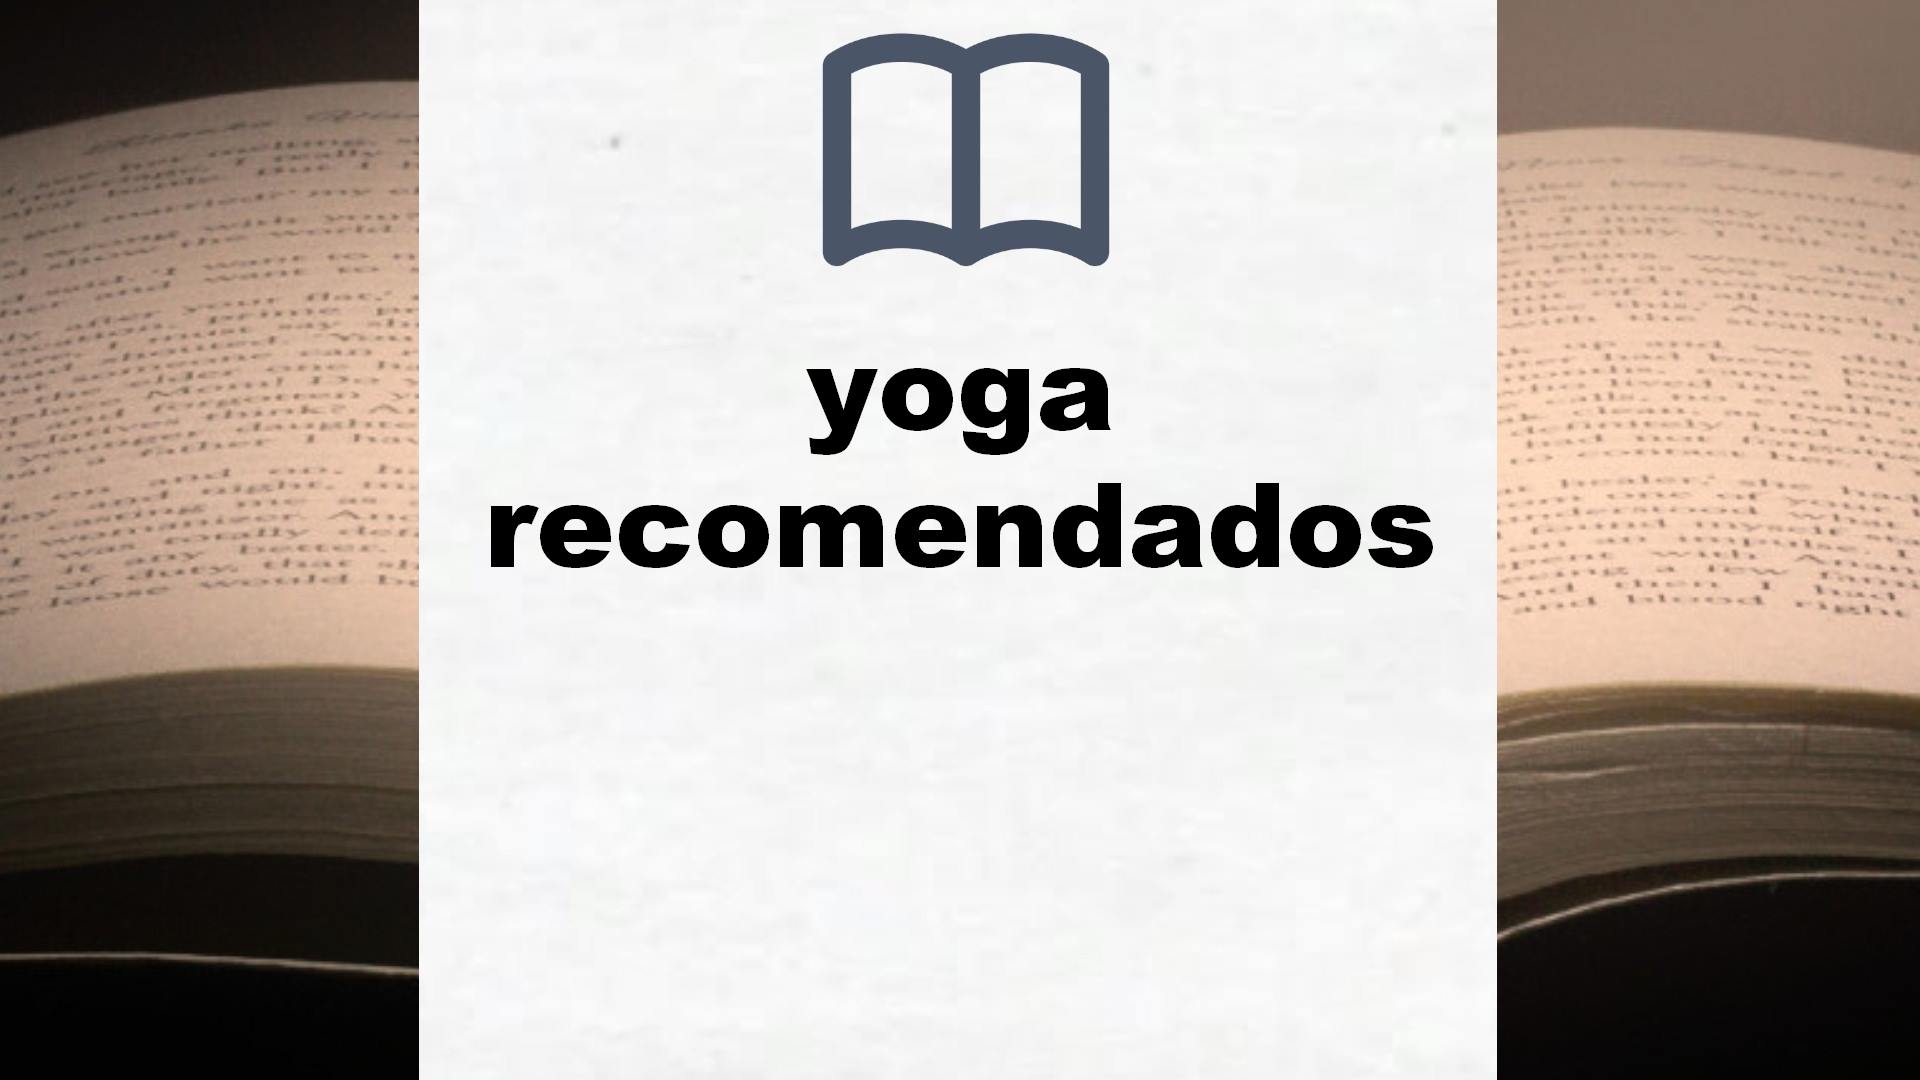 Libros sobre yoga recomendados